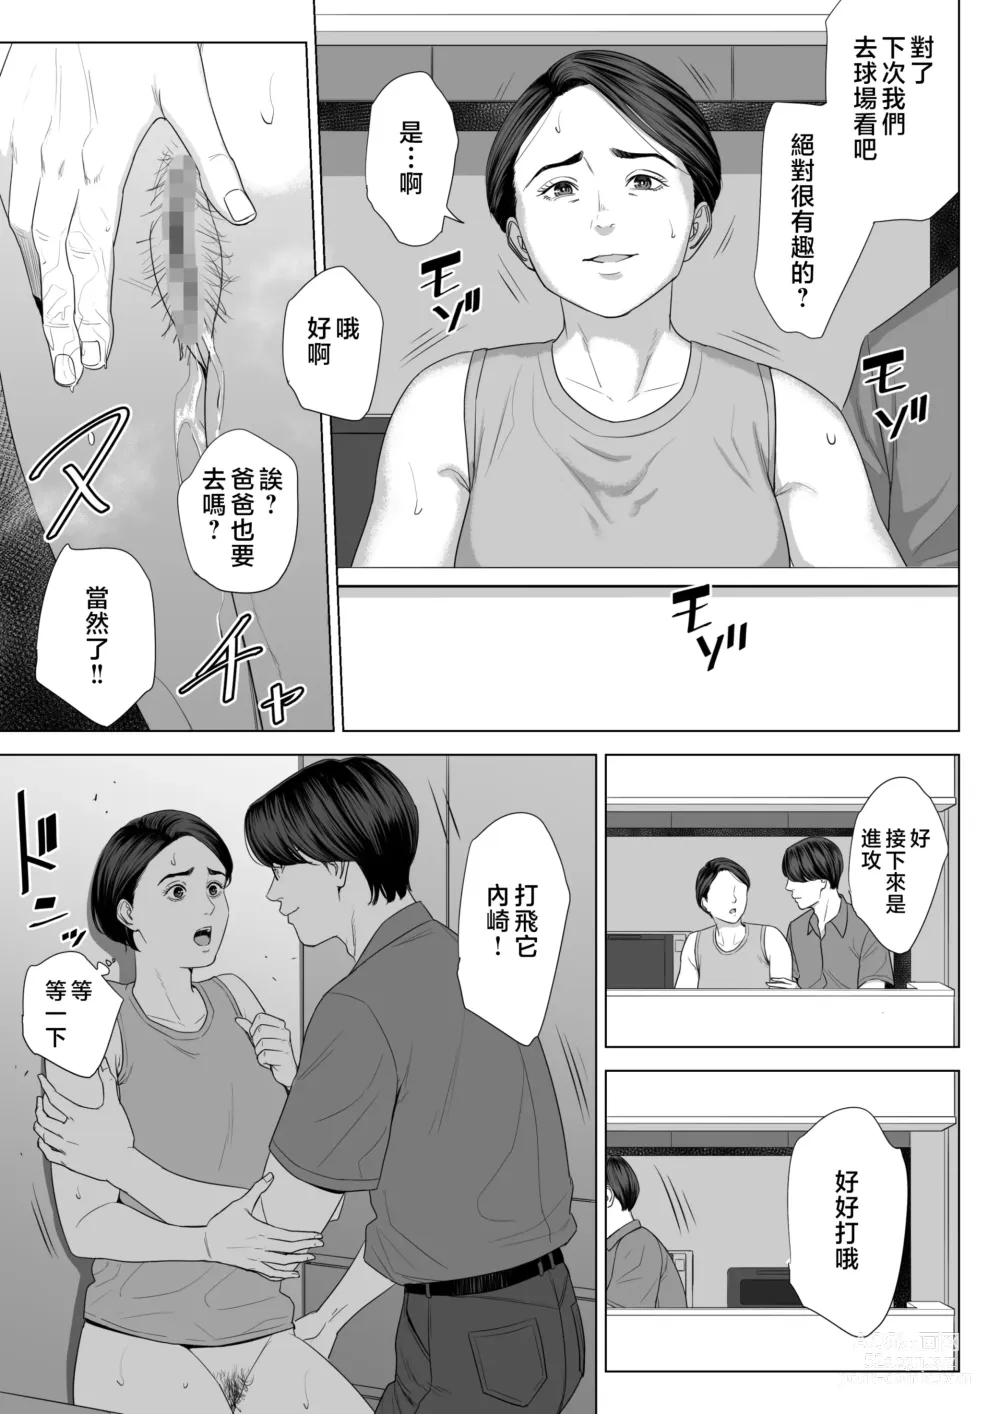 Page 62 of doujinshi Gibo no Tsukaeru Karada.